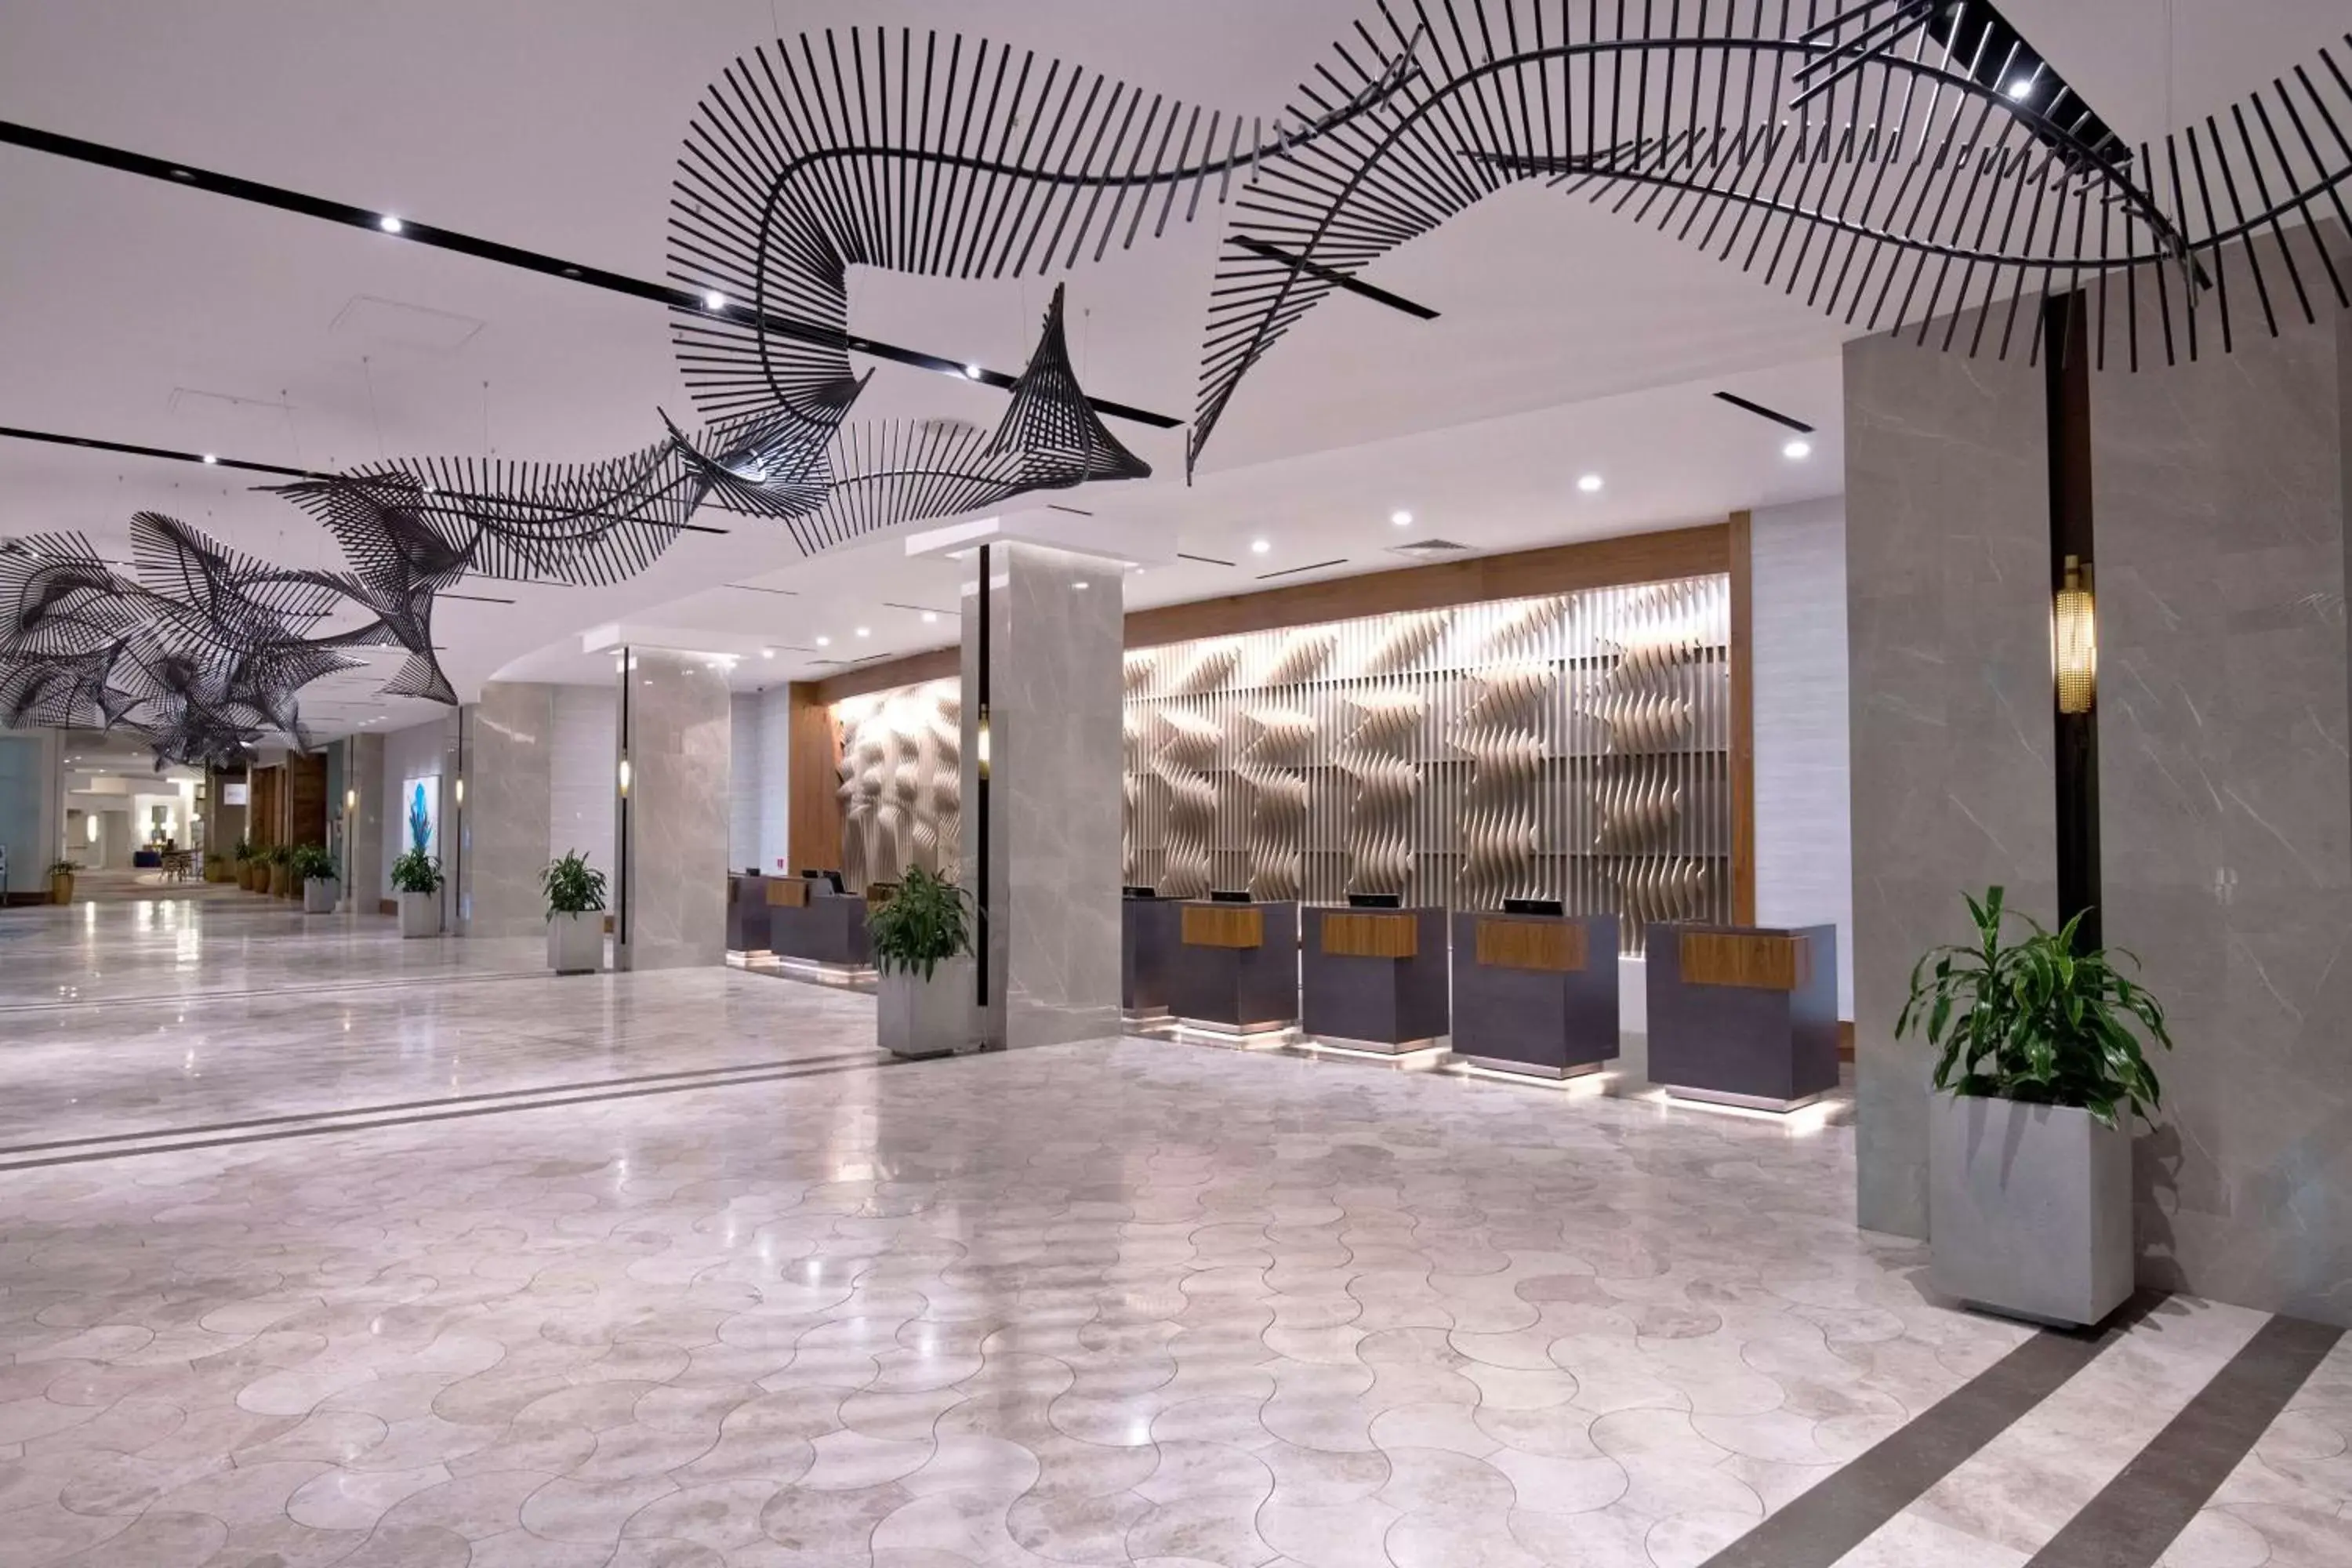 Lobby or reception in Hilton Orlando